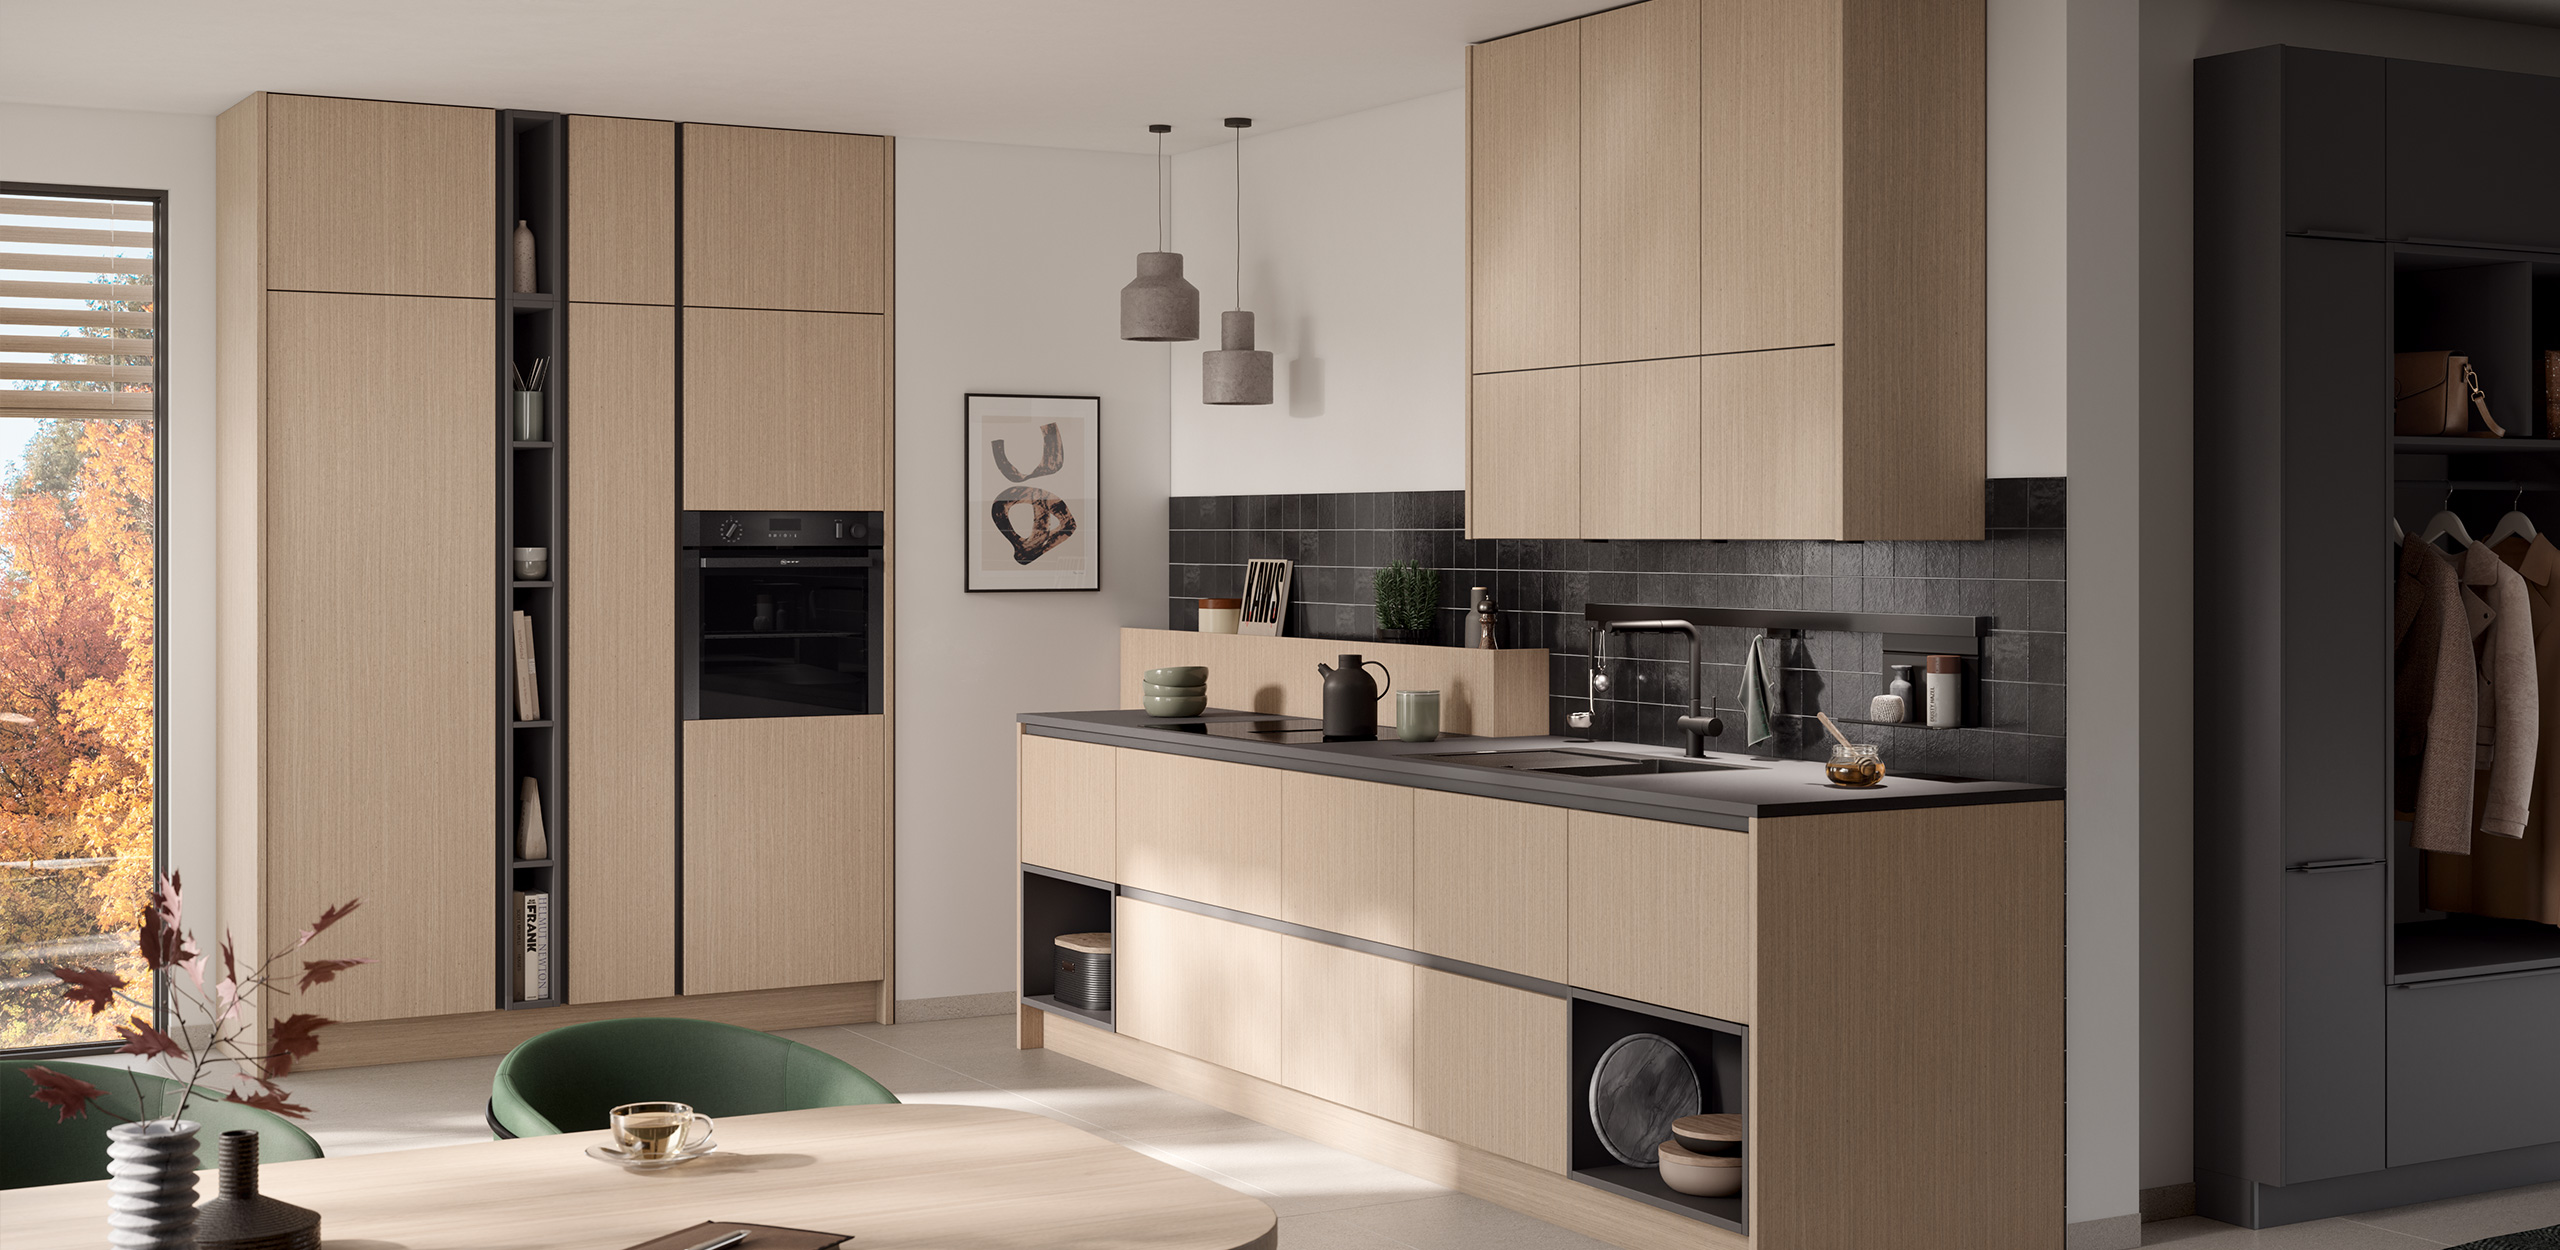 Bild der concept130 MONTREAL-GL Feineiche-hell mit Küchenhochschrank bis zur Decke, integriertem Backofen, Küchenzeile und darüberliegenden Deckenhohen Oberschränken, im Vordergrund Esstisch mit grünen Polsterstühlen